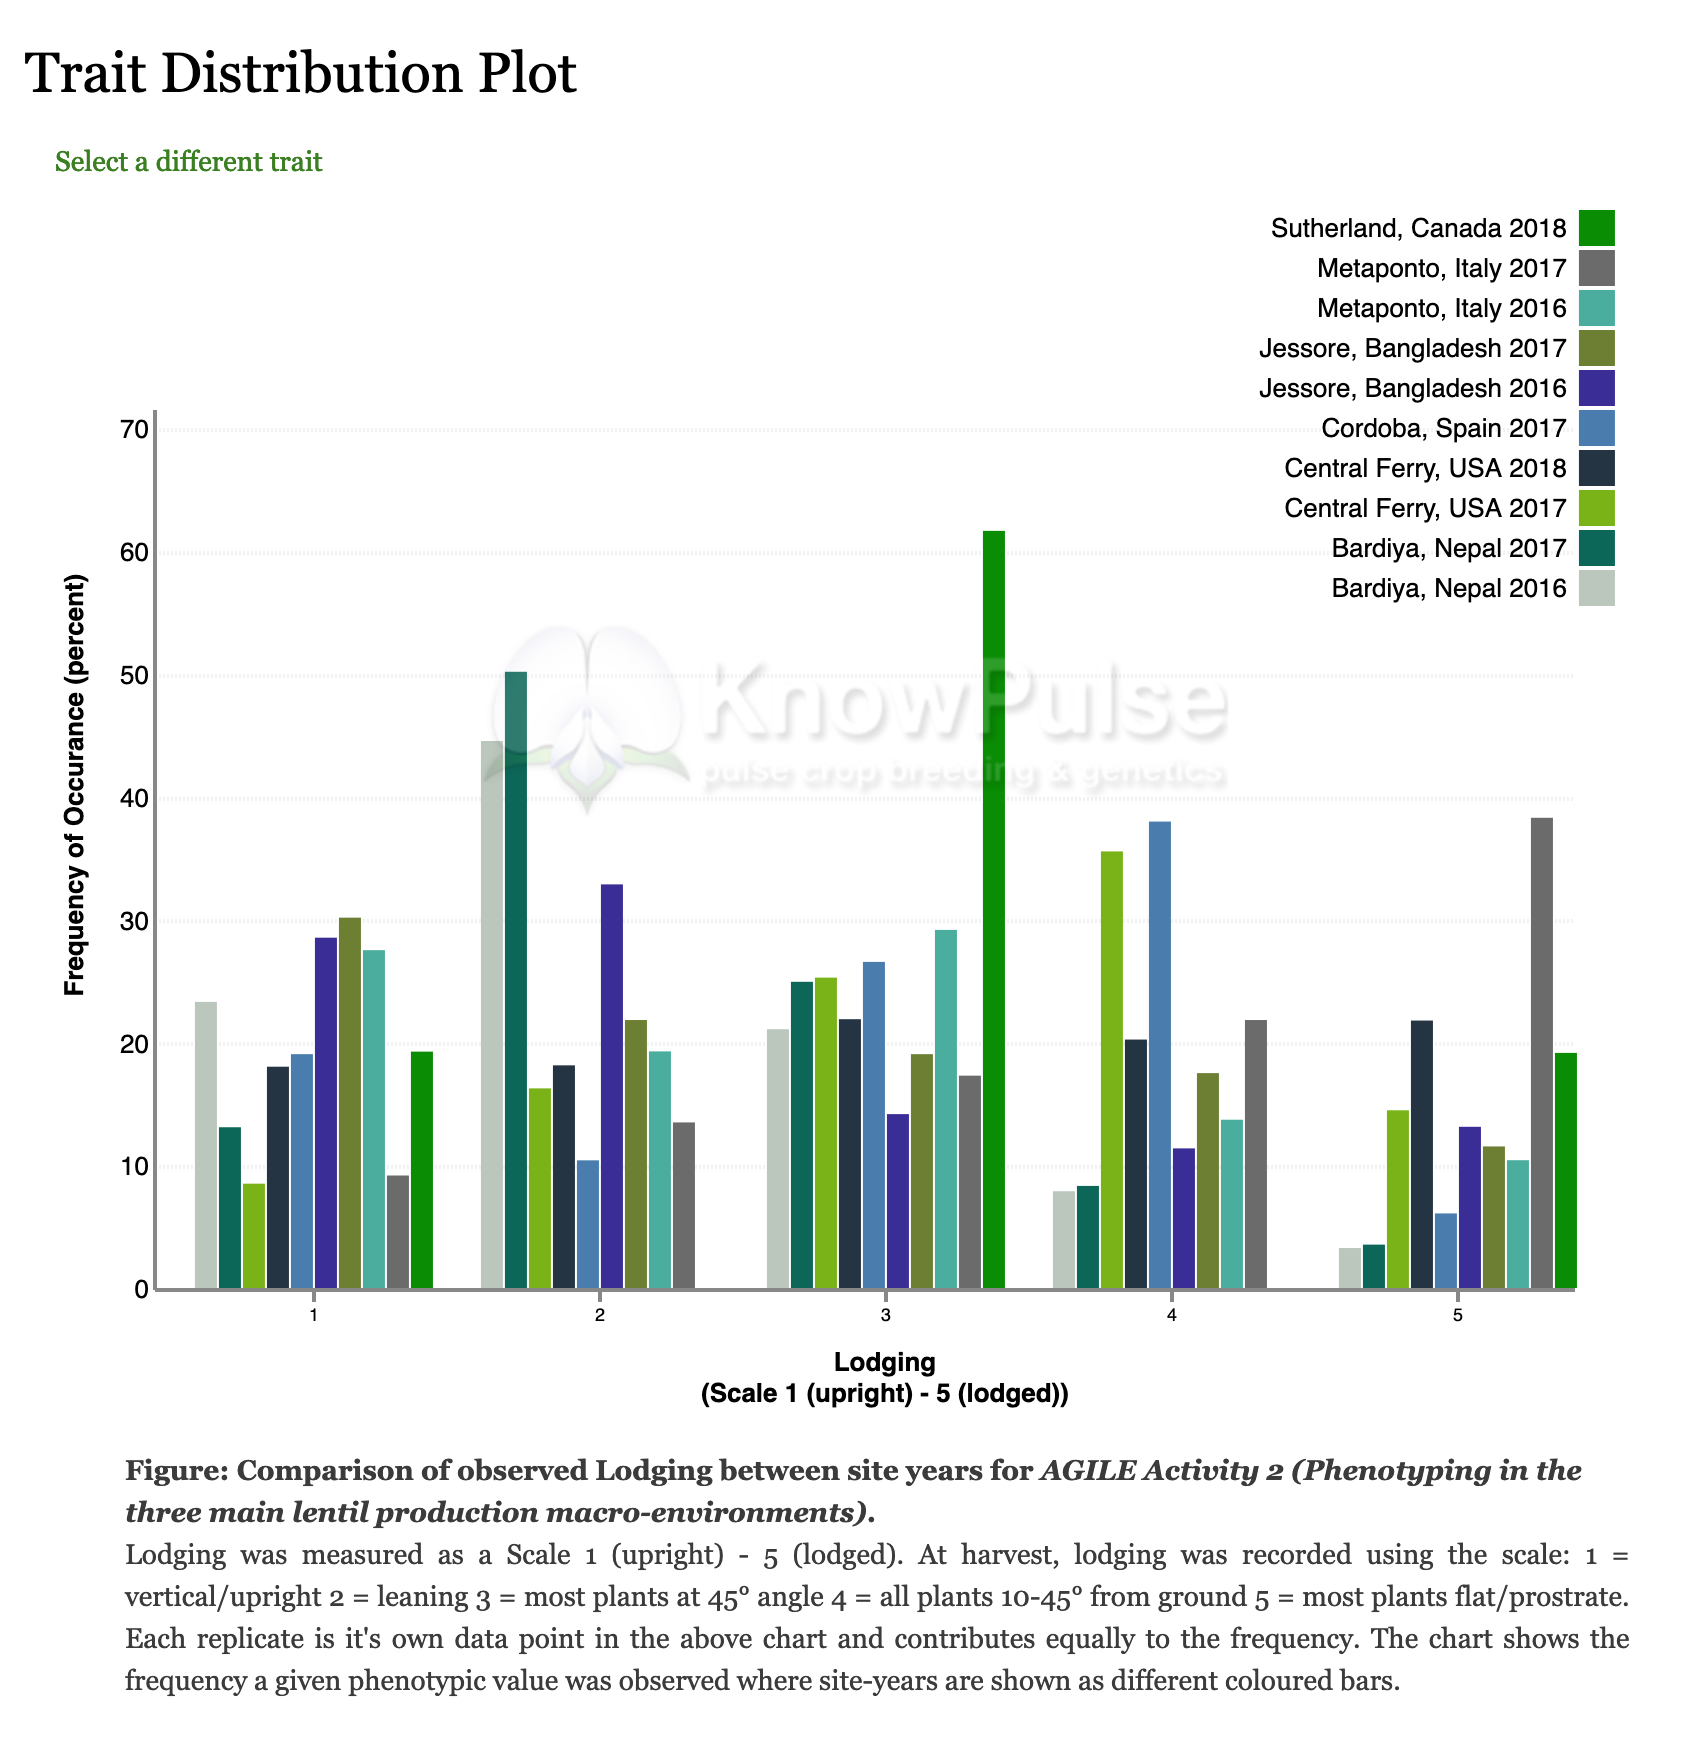 ../_images/visualize.3.trait-distribution-plot.png